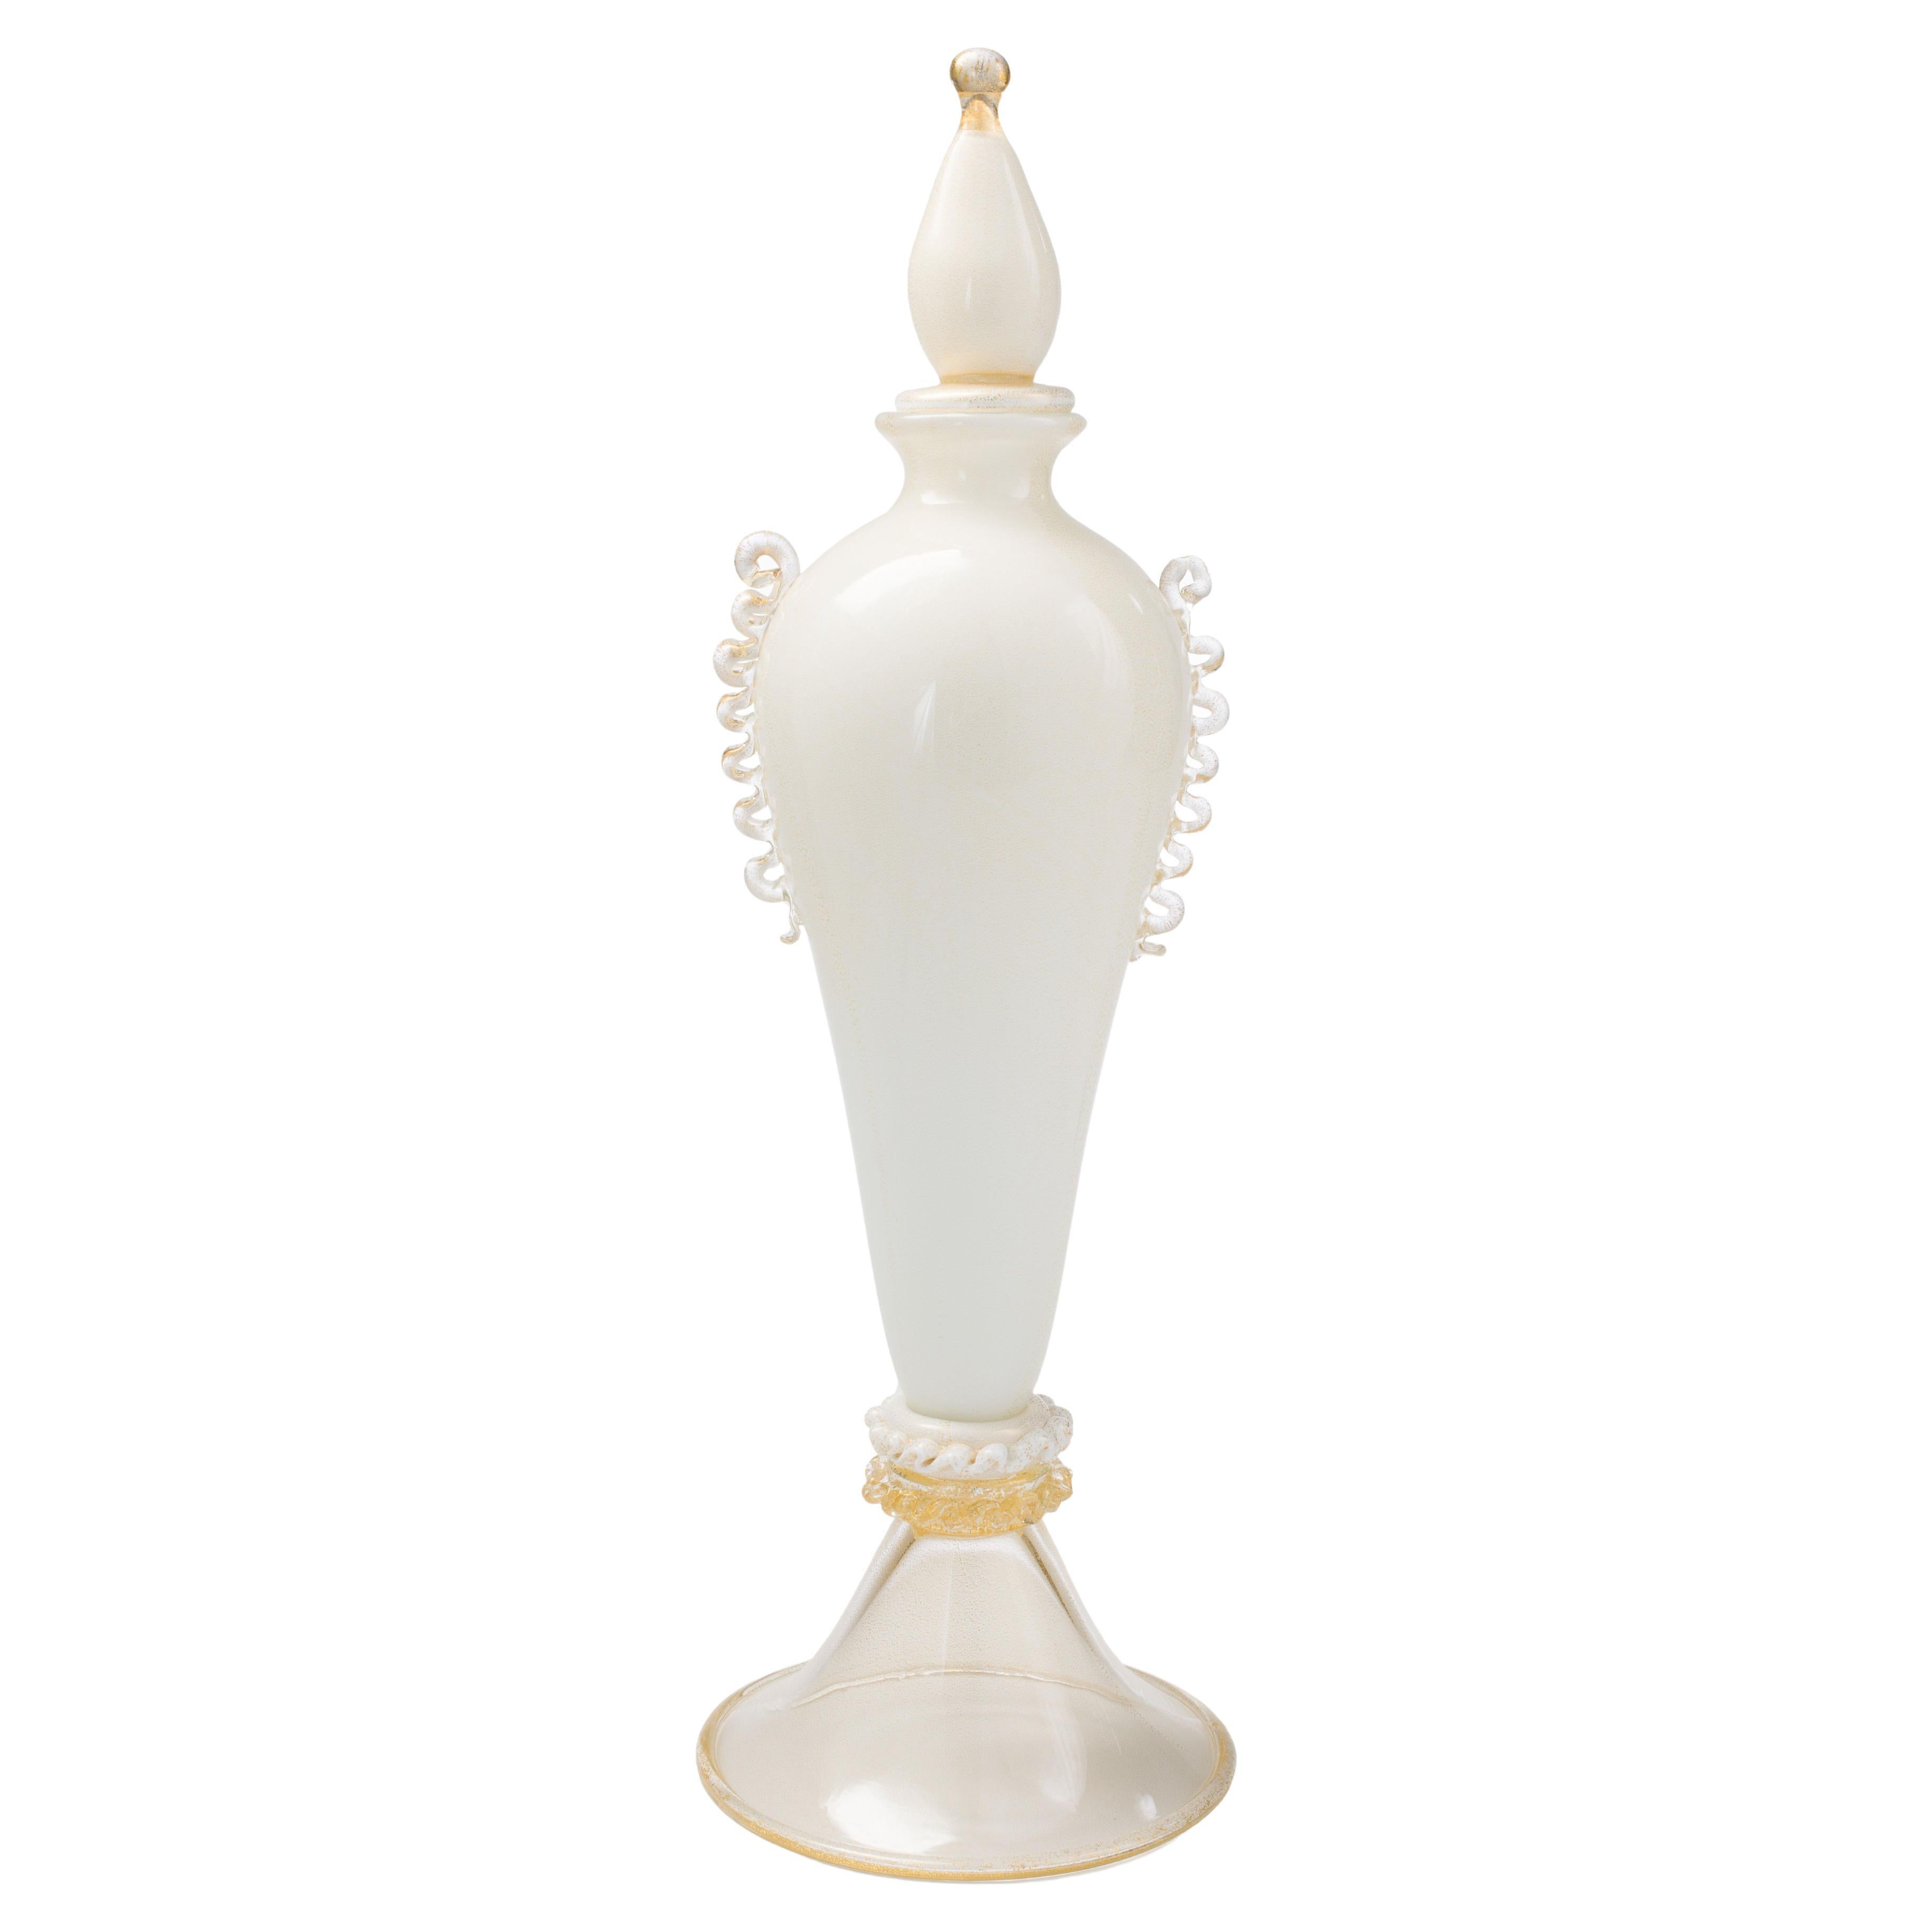 1295 Murano Hand Made Art Glass Lattimo Vase / Bottle